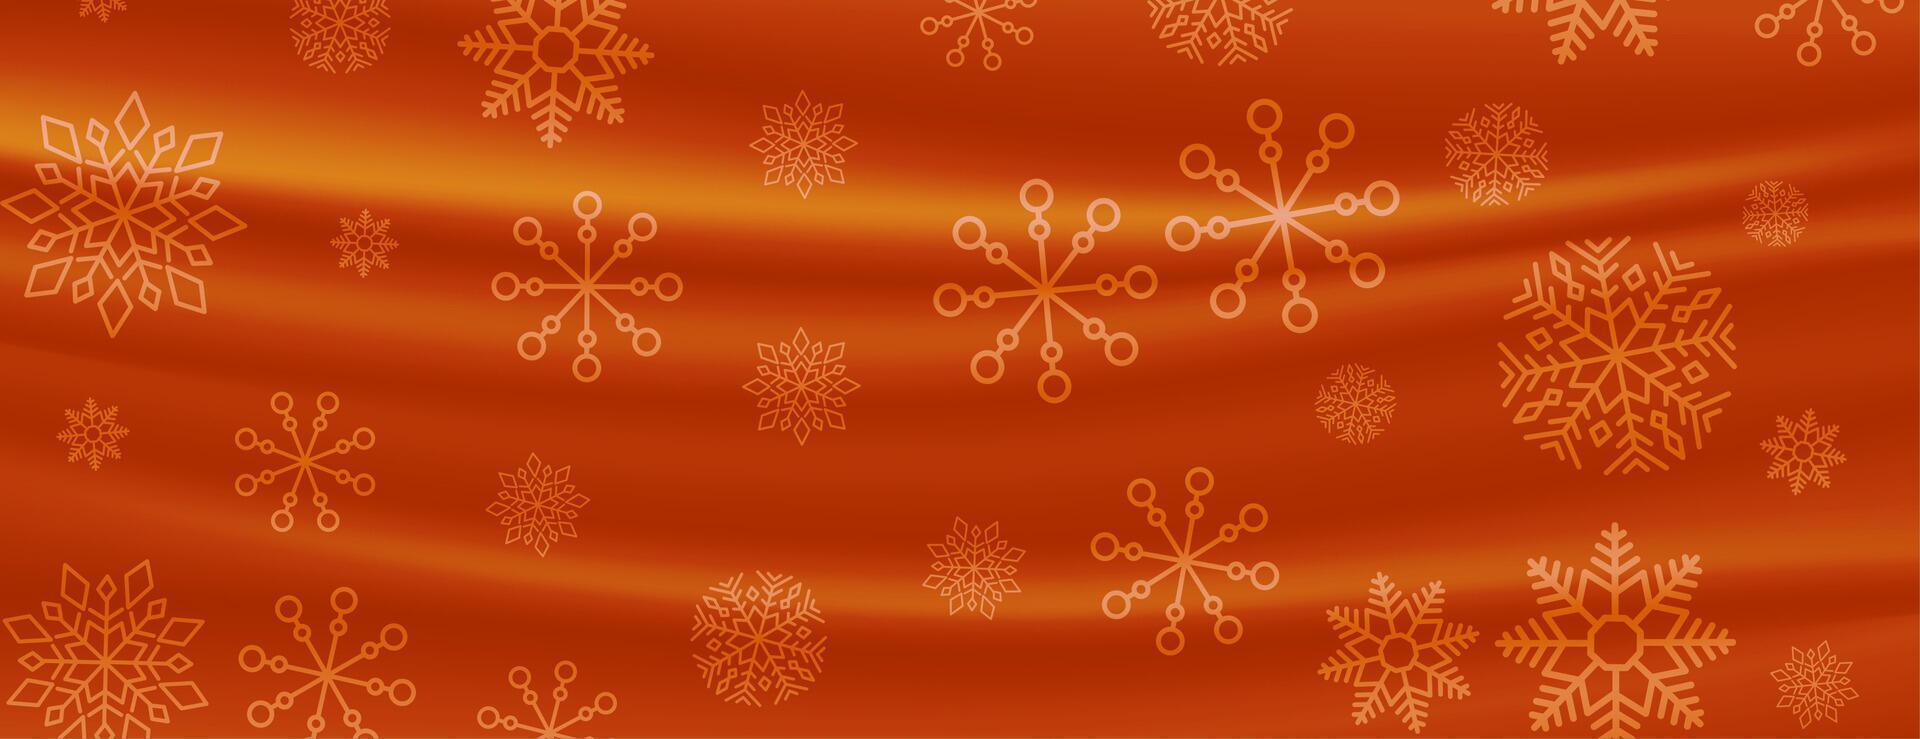 tenda stile allegro Natale i fiocchi di neve bandiera vettore